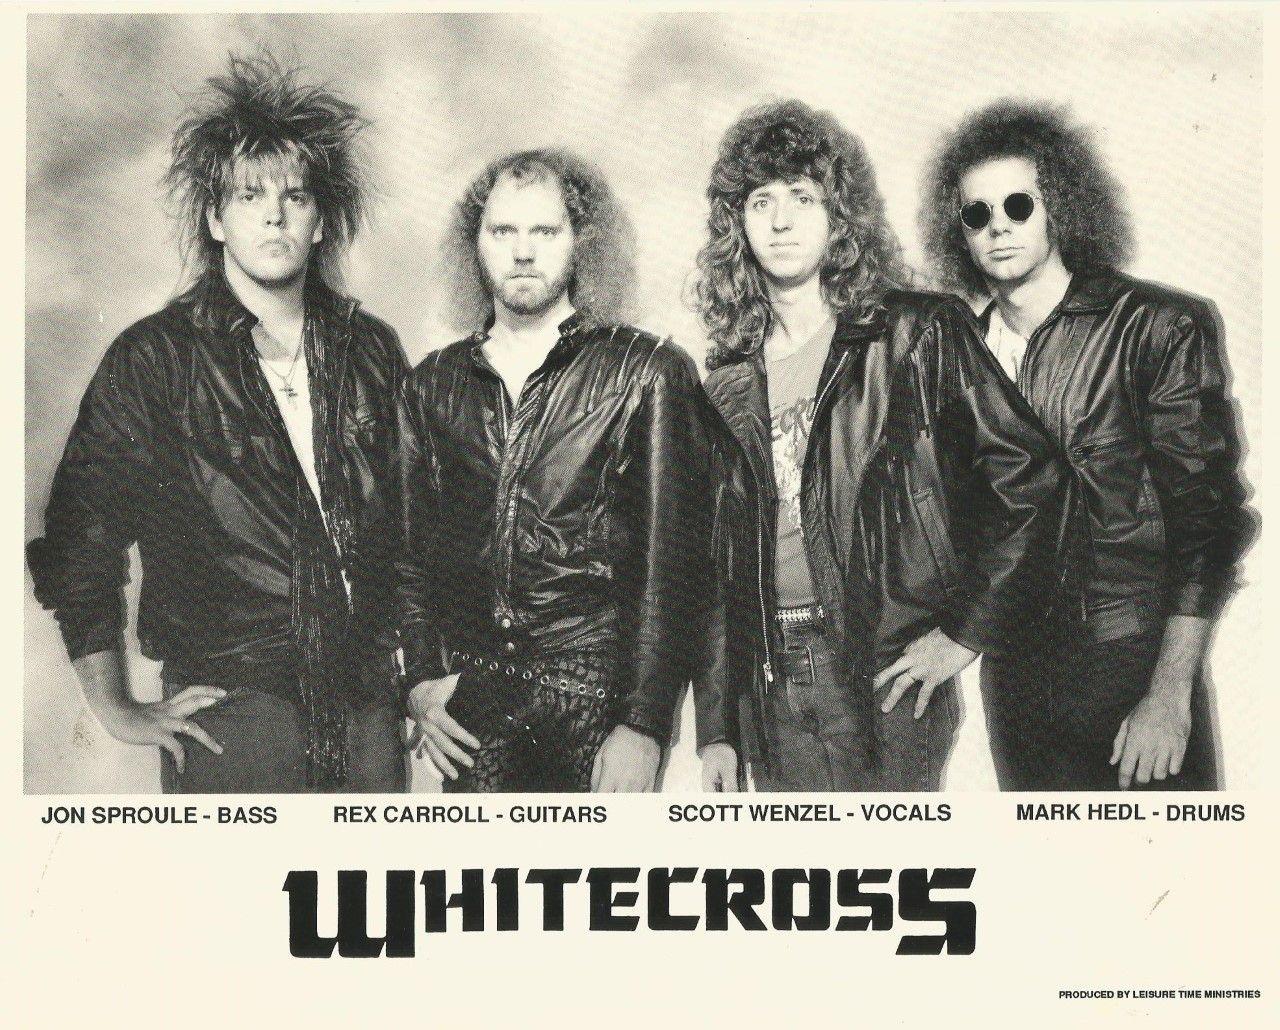 White Cross Band Logo - February 1988. Whitecross performed live on Kansas City area